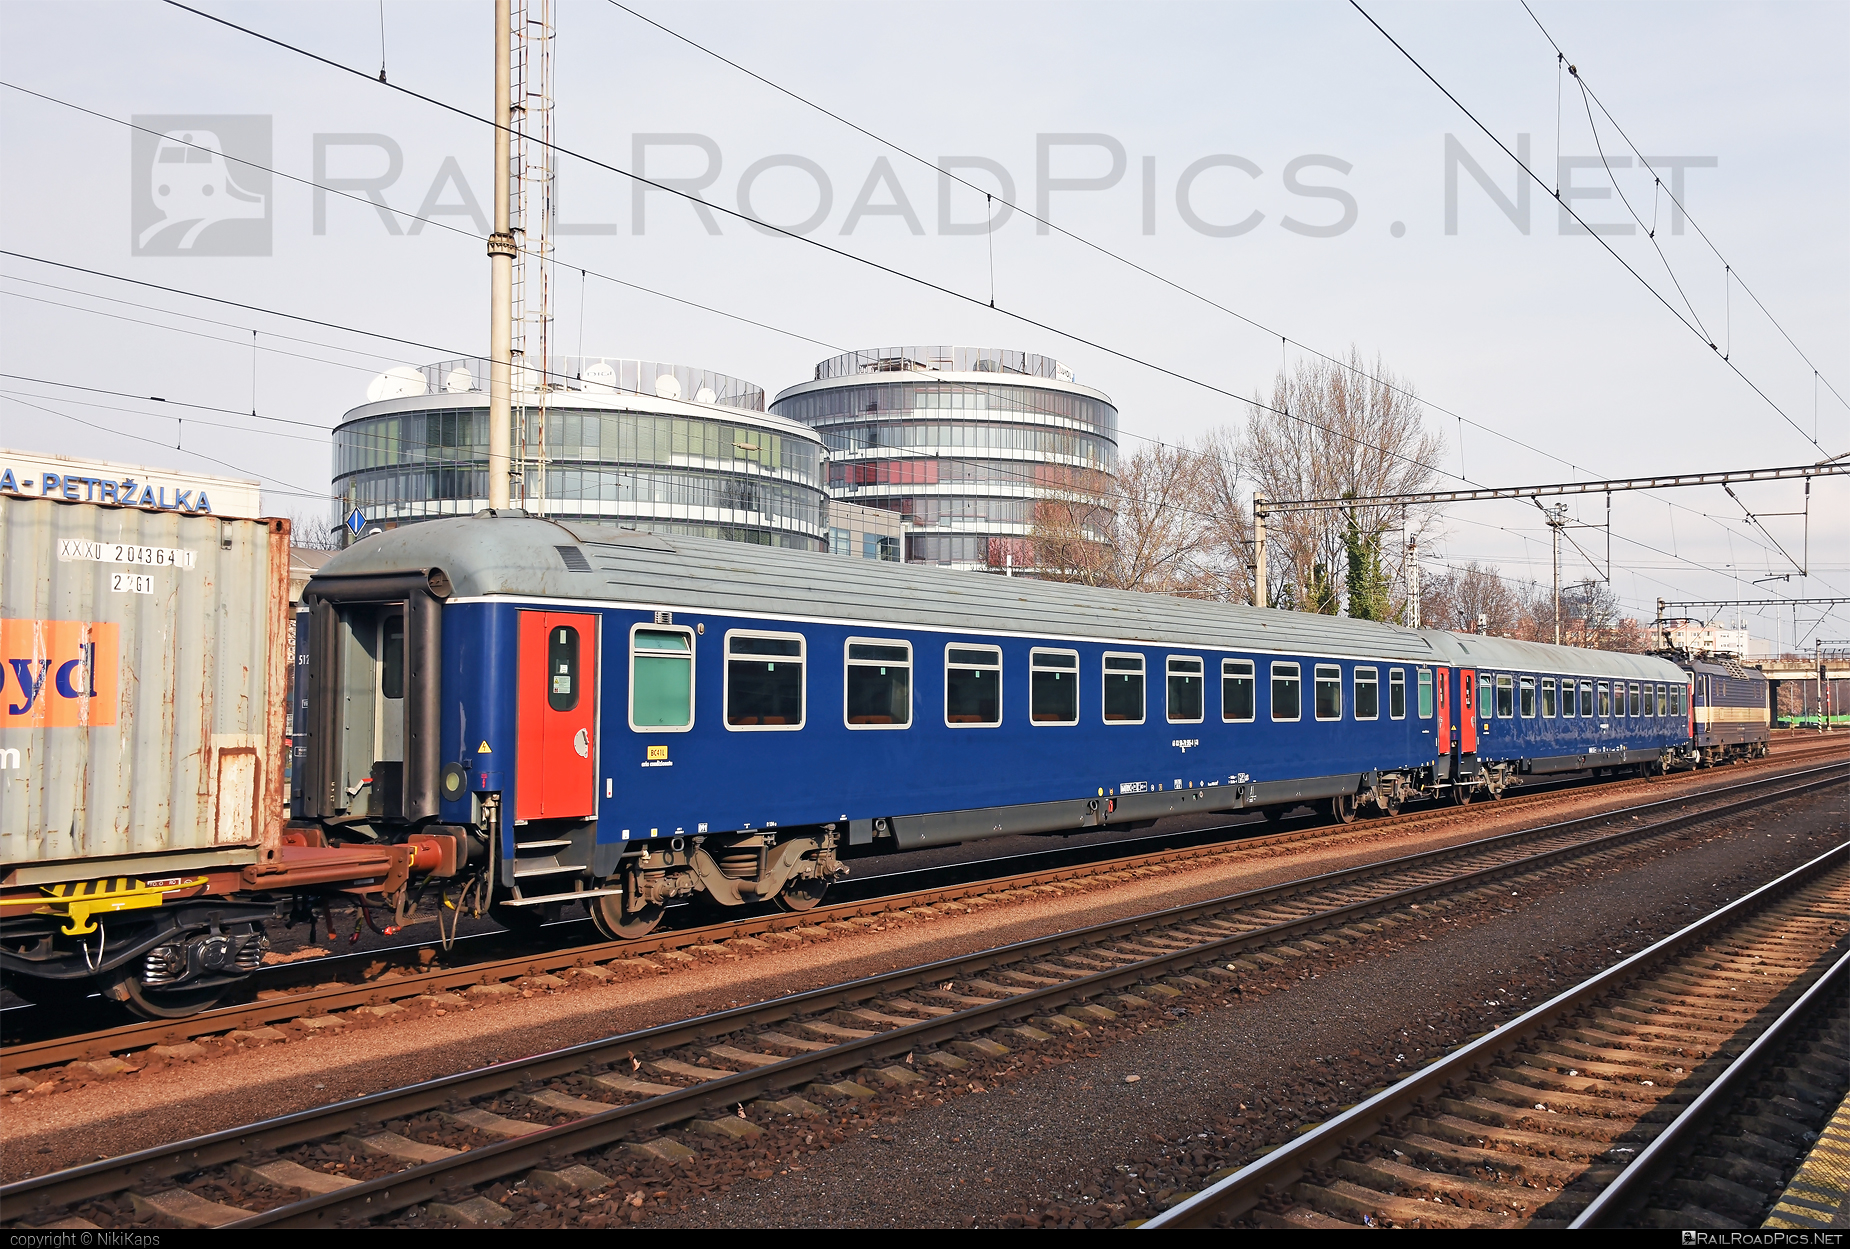 Class B - Bc - Bc - 50-70 505-8 operated by Trenitalia S.p.A. #ferroviedellostato #fs #fsitaliane #trenitalia #trenitaliaspa